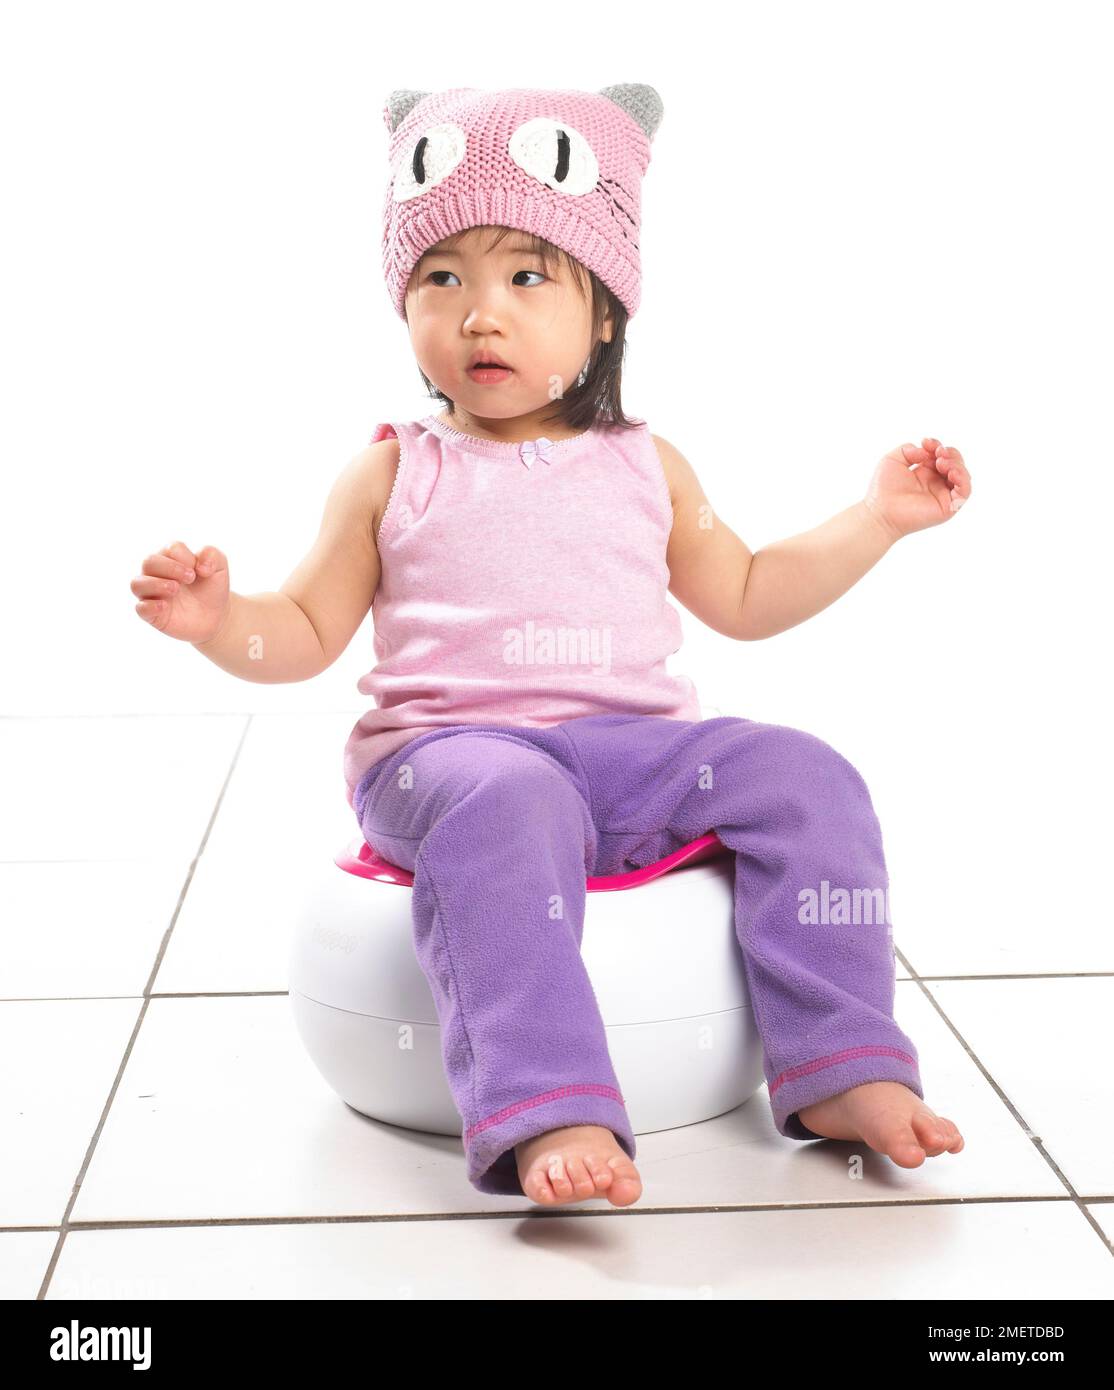 Fille portant un gilet rose, un chapeau de laine rose et un pantalon de jogging violet assis sur un pot blanc, 20 mois Banque D'Images